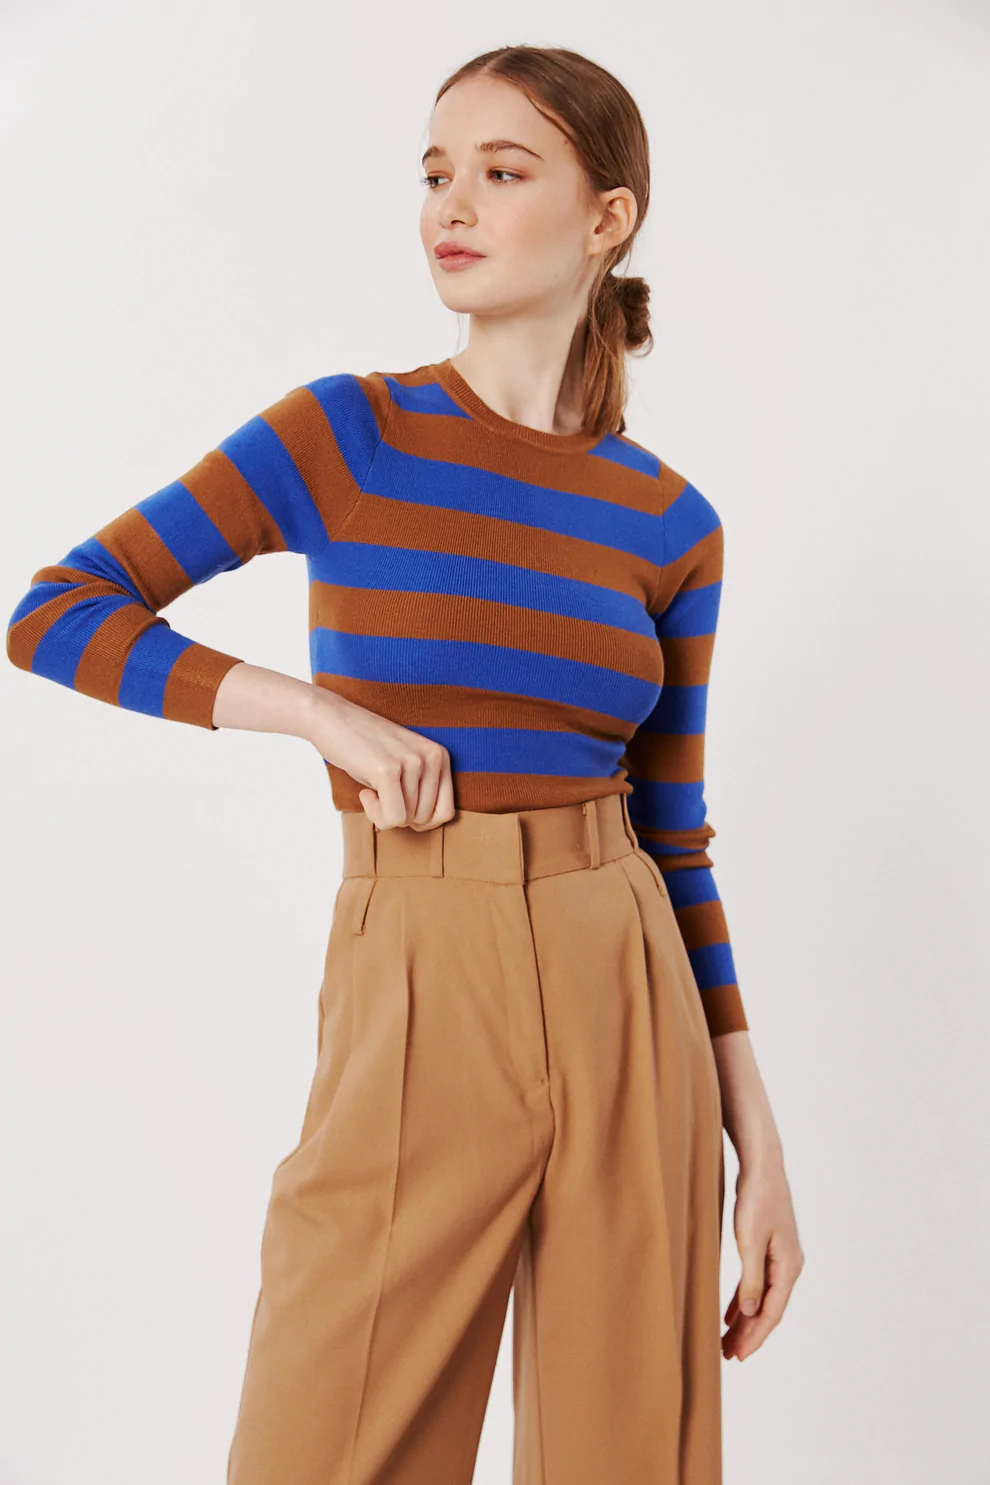 DÈLUC - lucca striped sweater (blue) — RAH RAH NYC